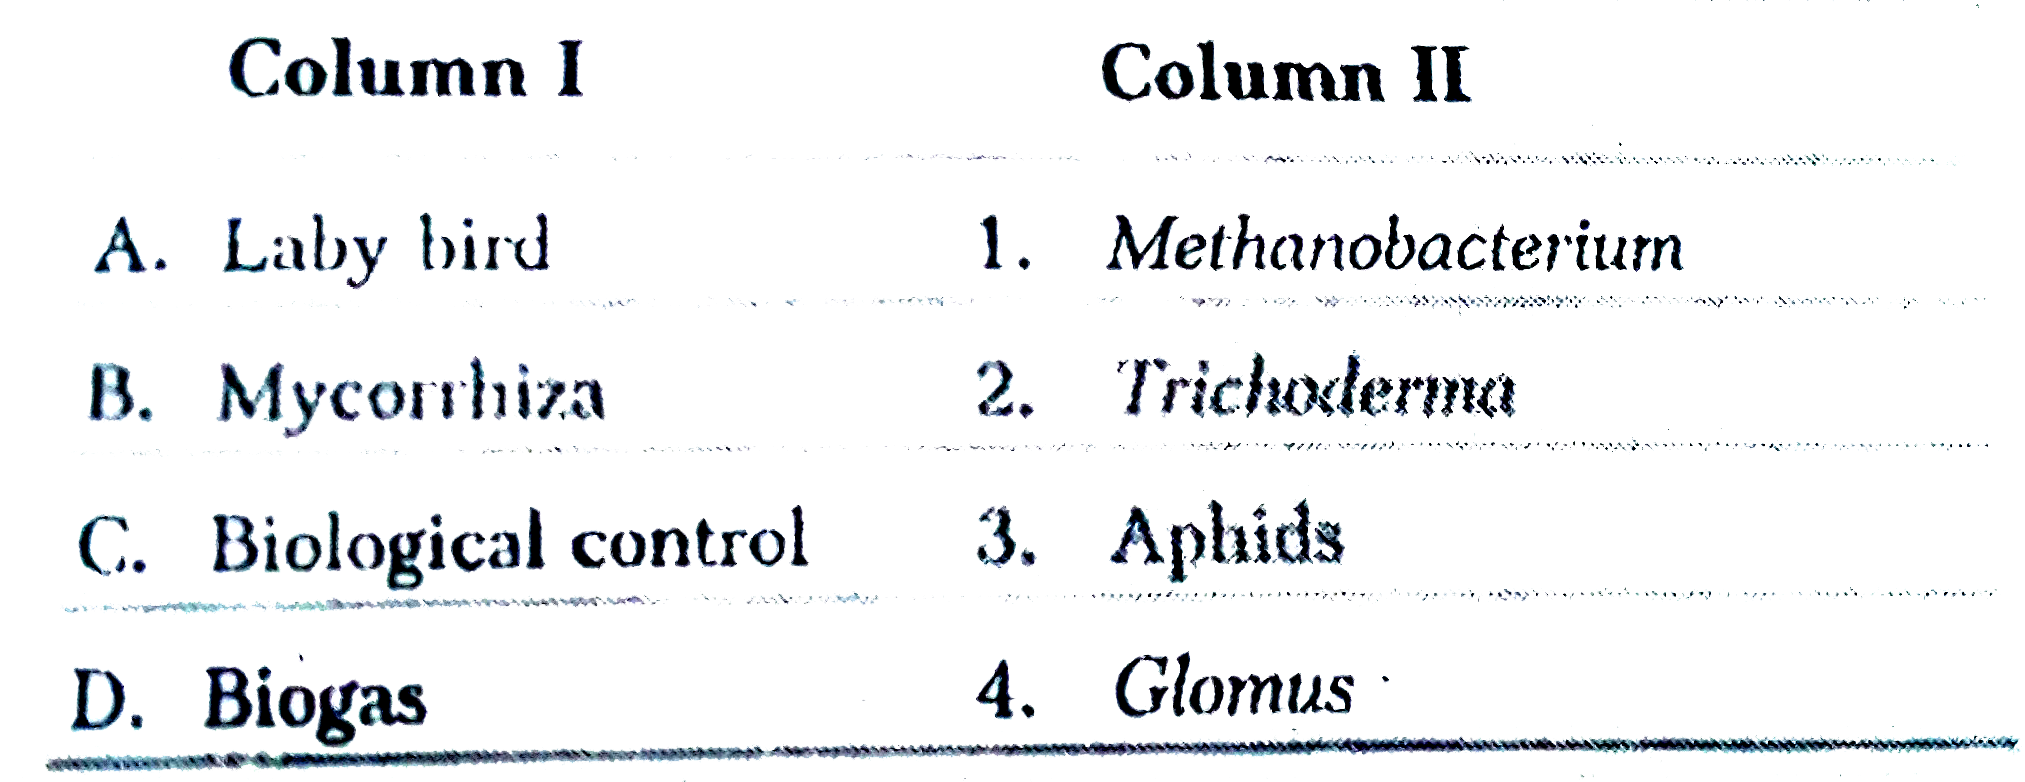 Match the following Columns.